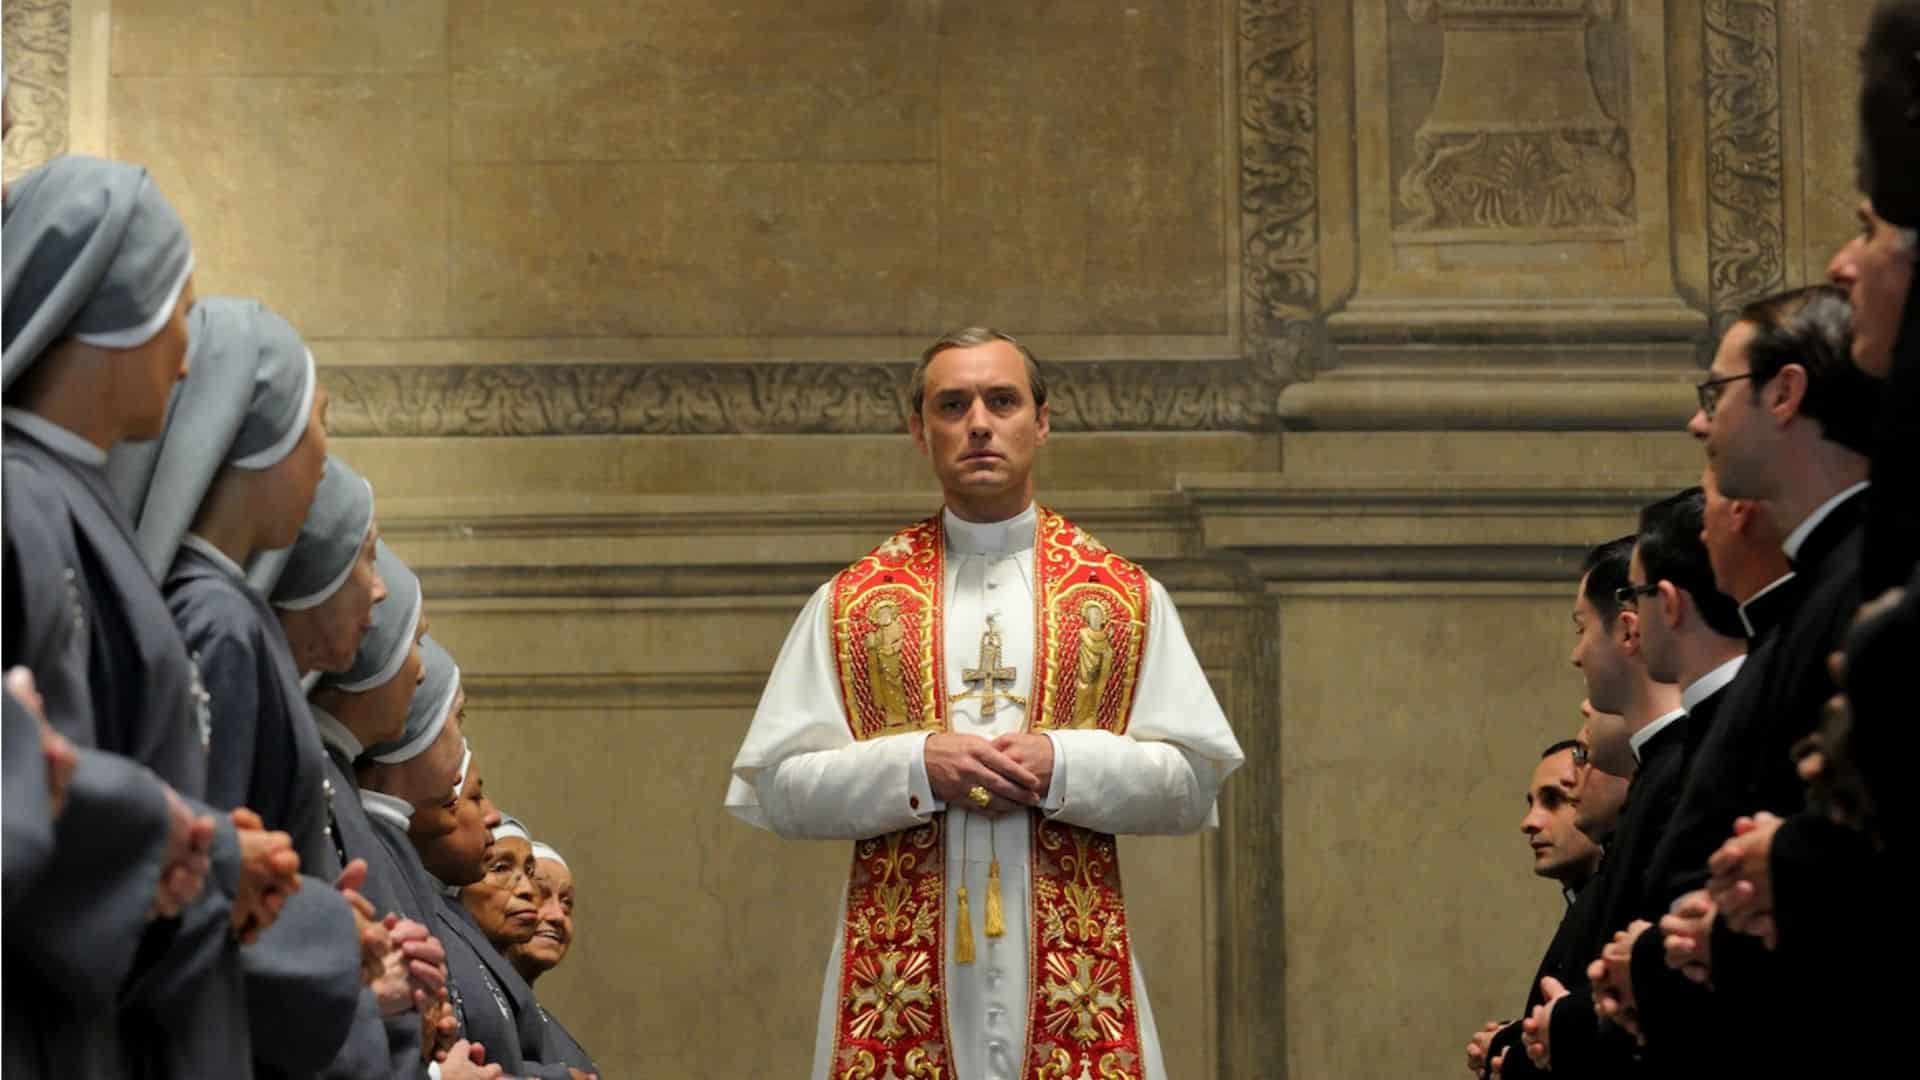 The New Pope: ecco la prima immagine ufficiale della serie con Jude Law